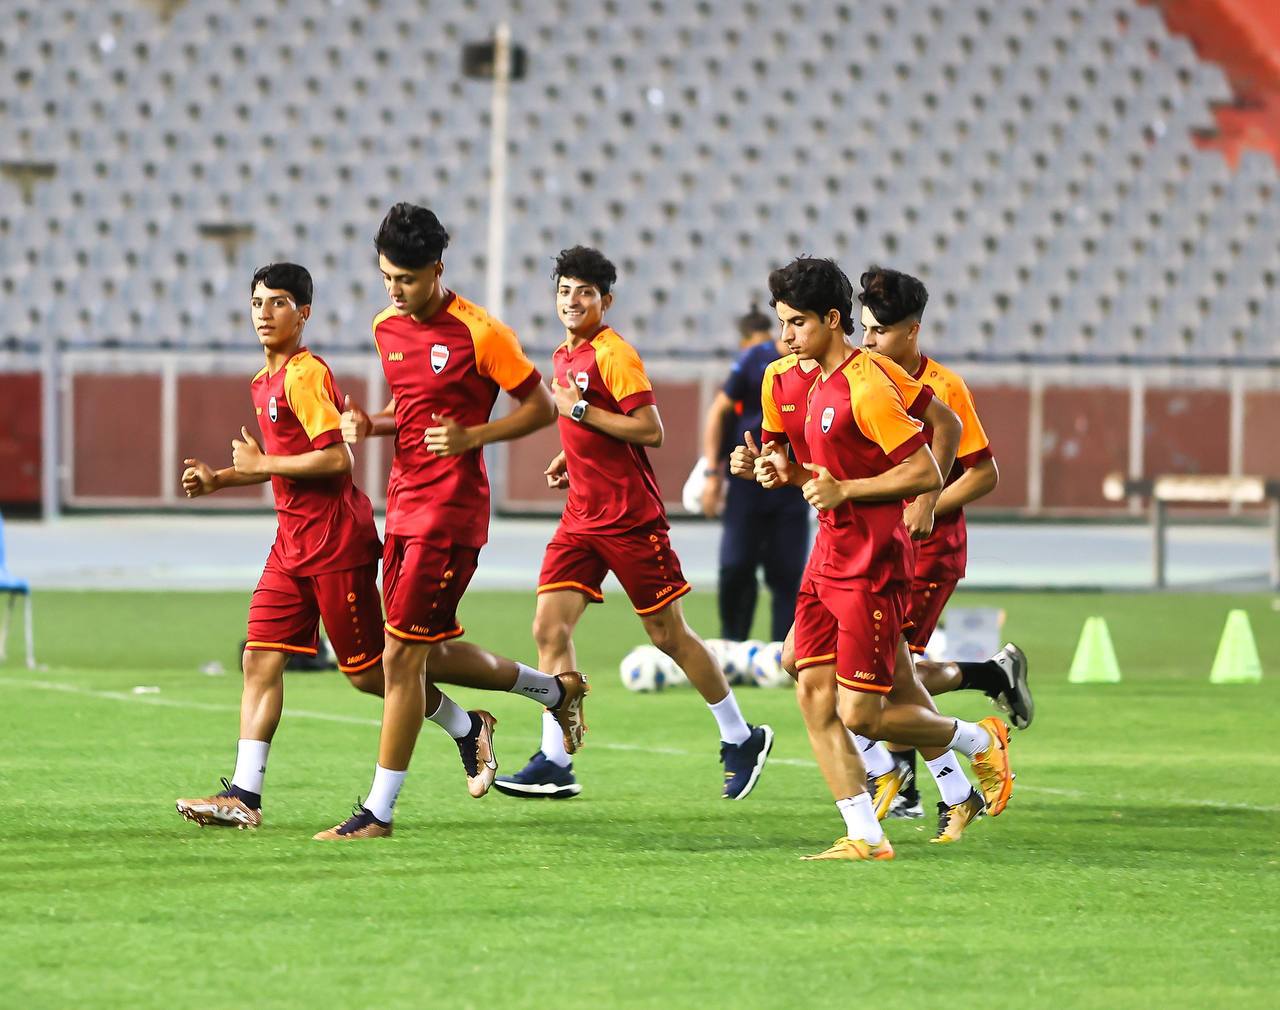 باشر منتخب شباب العراق، تحضيراته التدريبية في ملعبِ الشعب الدوليّ، استعدادًا لنهائياتِ كأس العالم تحت 20 عامًا، مع وصول محترفين جدد.